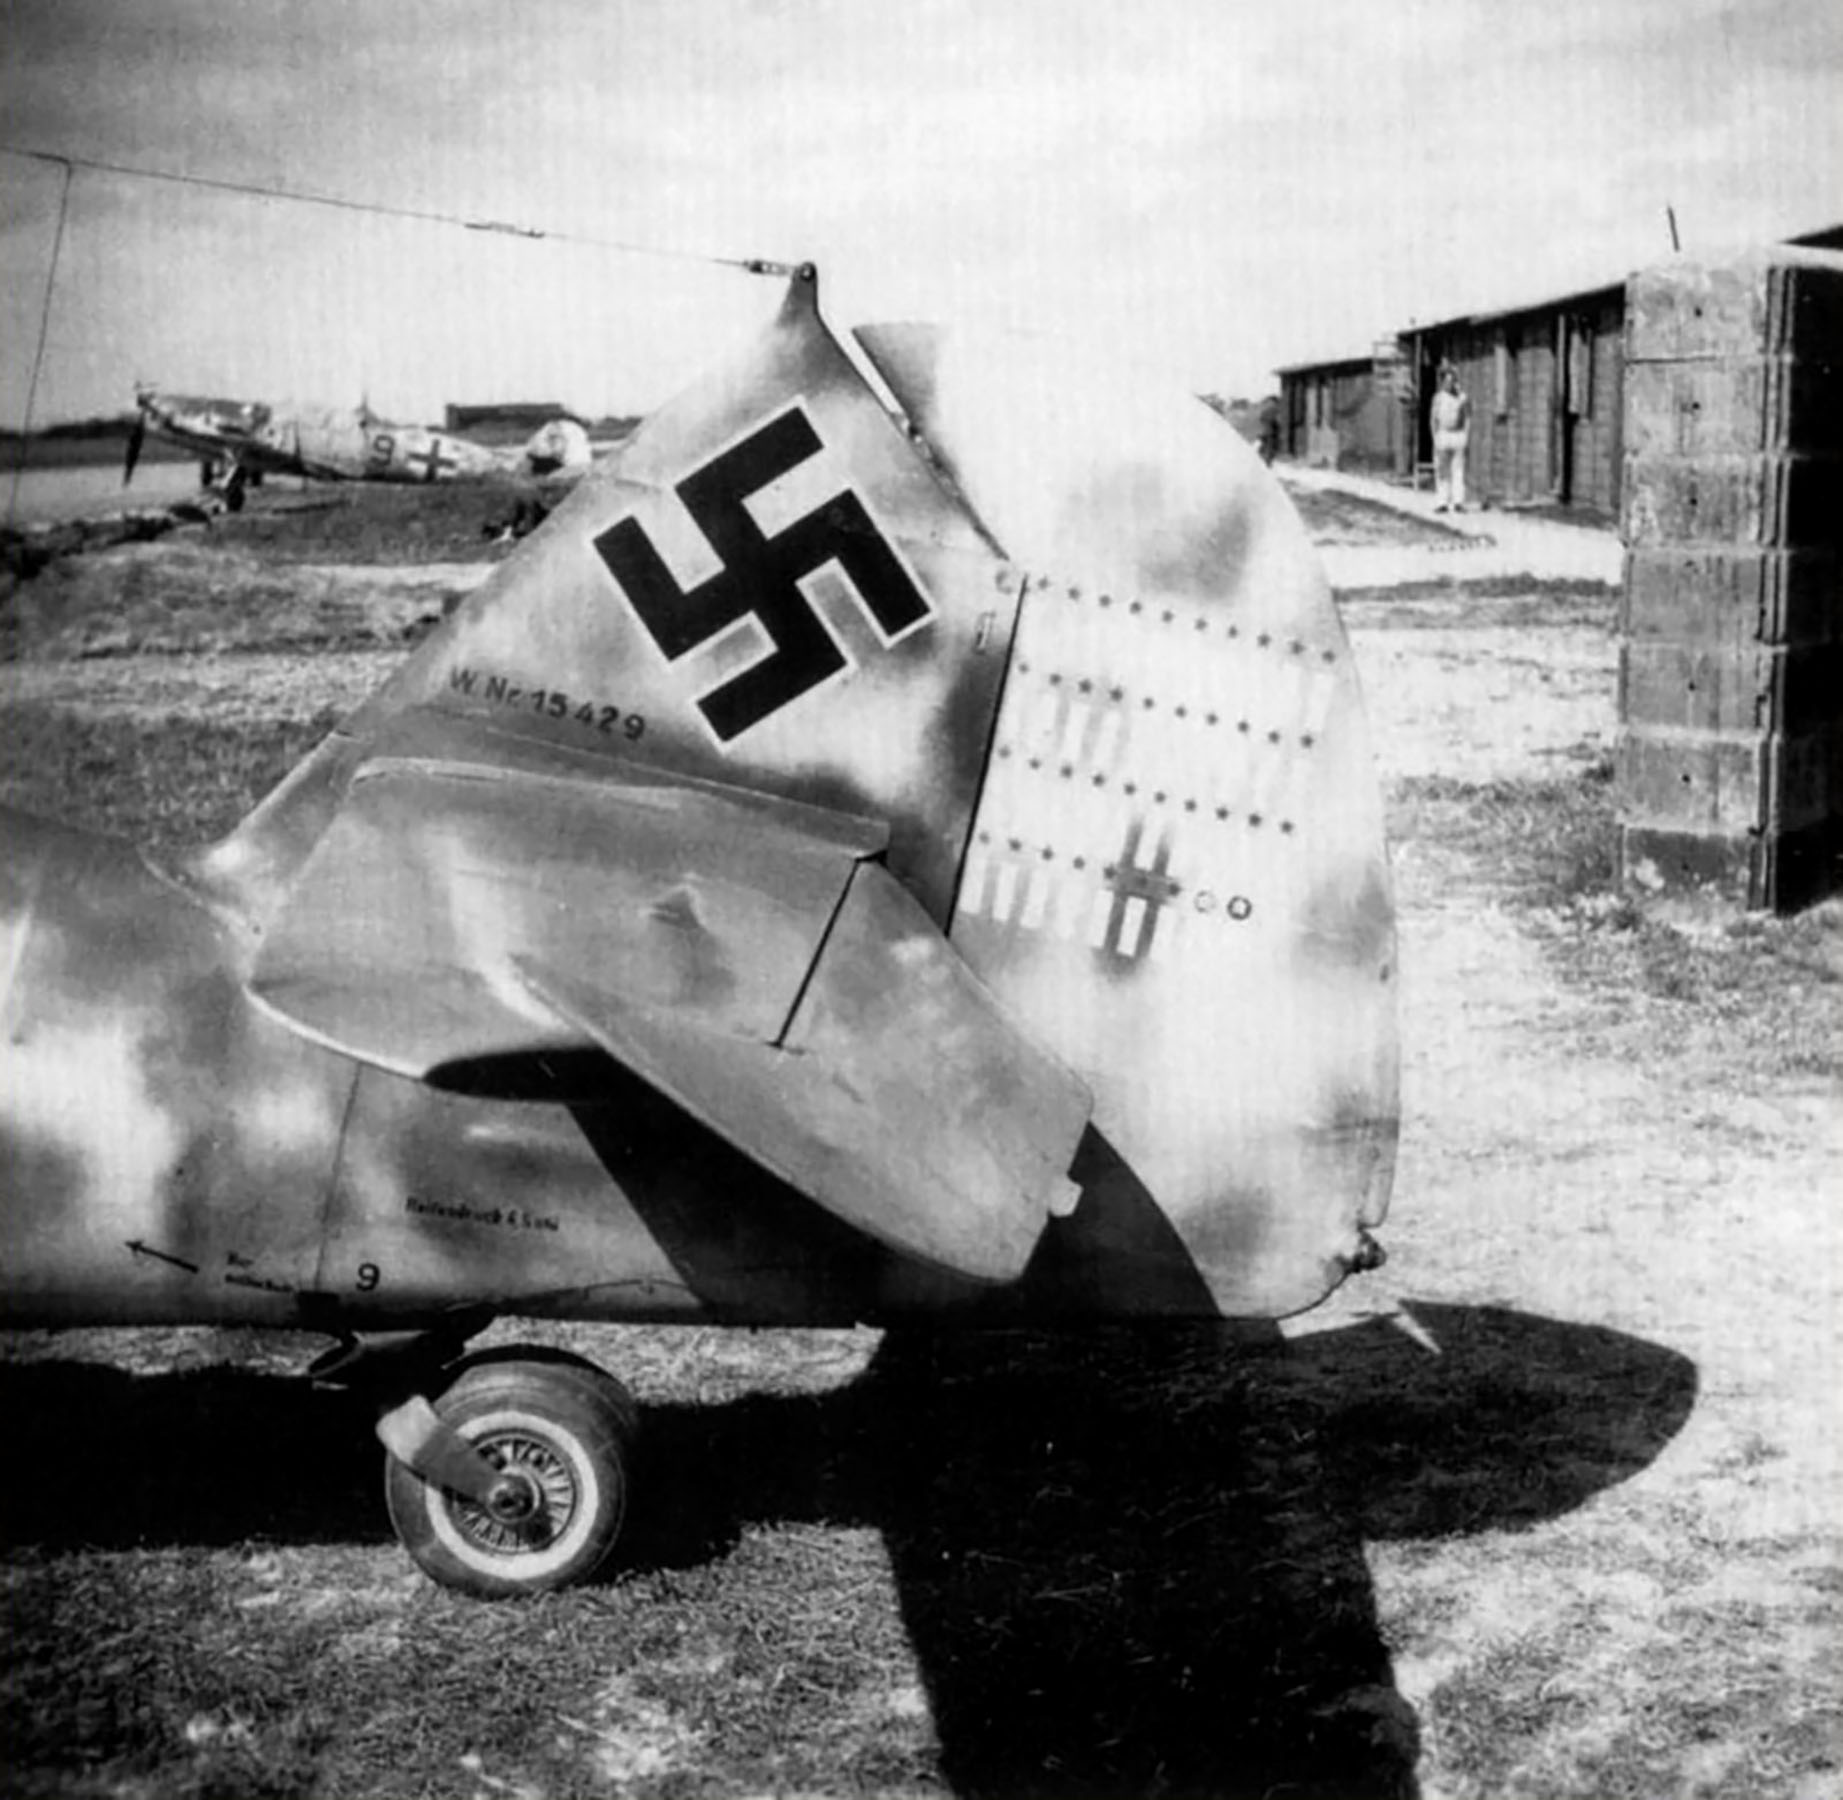 Messerschmitt Bf 109G6 8.JG1 Black 5 Alfred Miksch WNr 15429 July 1943 02